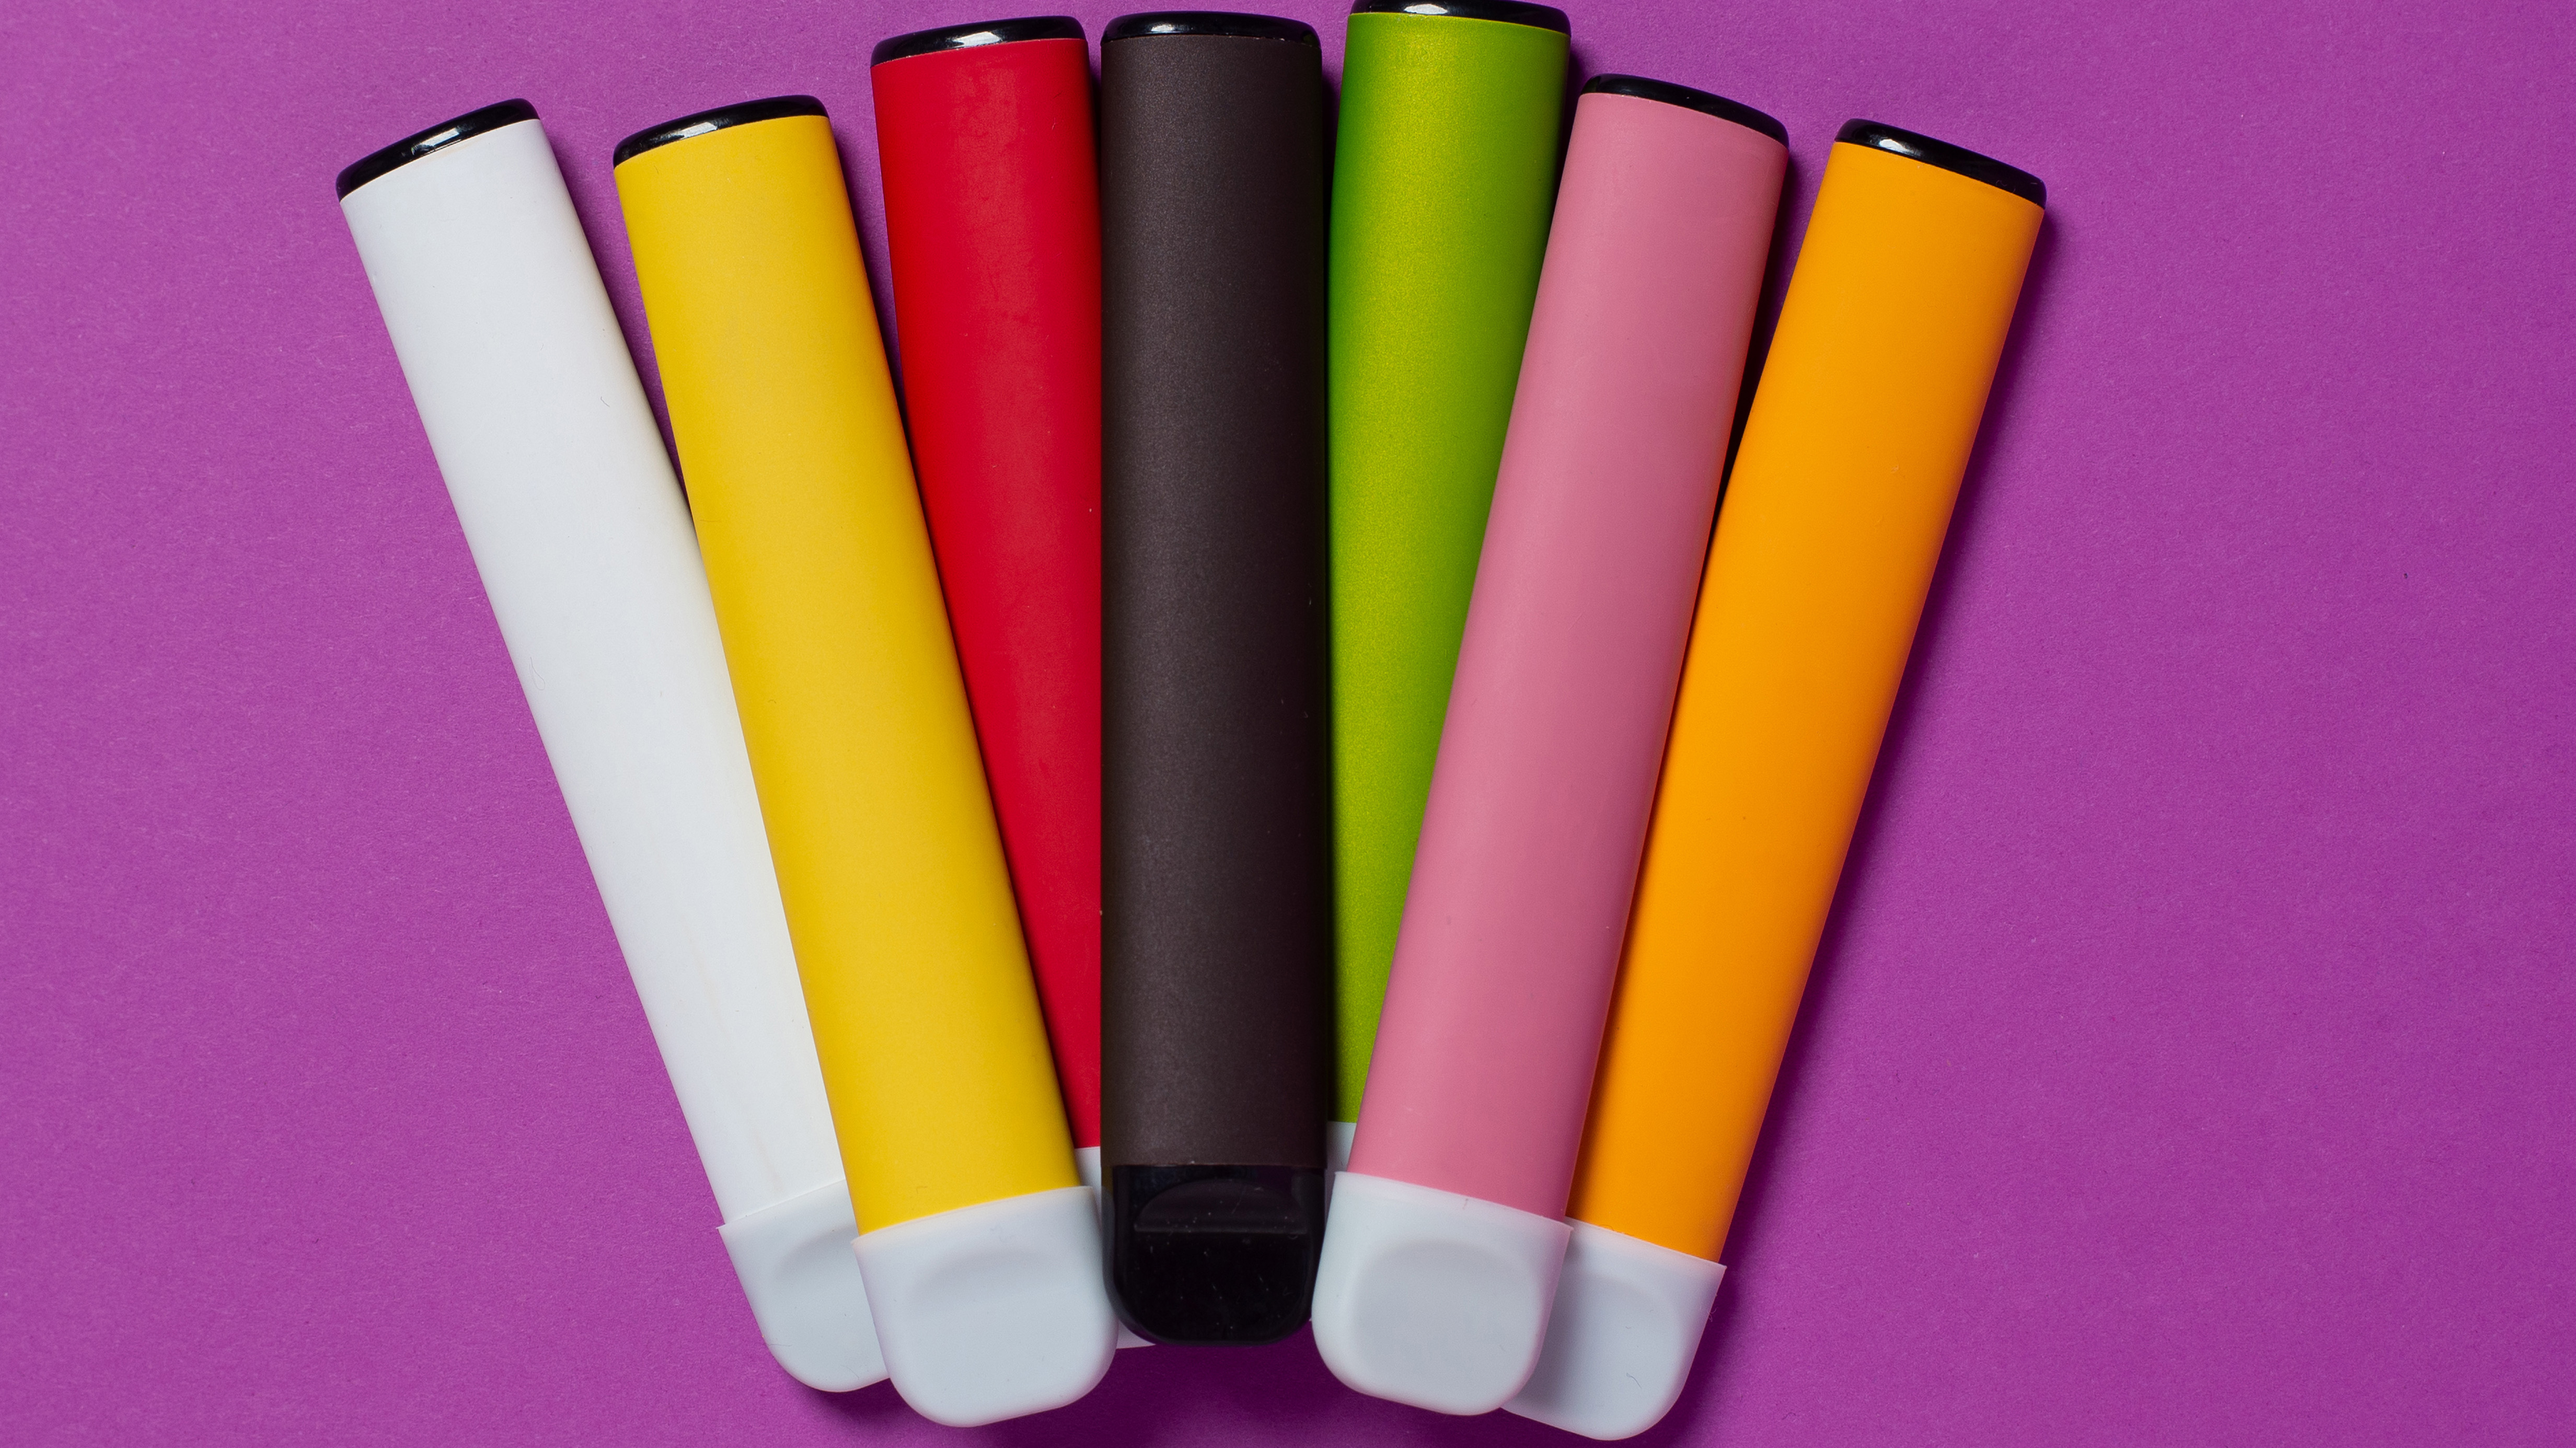 Colourful vapes or e-cigarettes can be harmful. (file image)